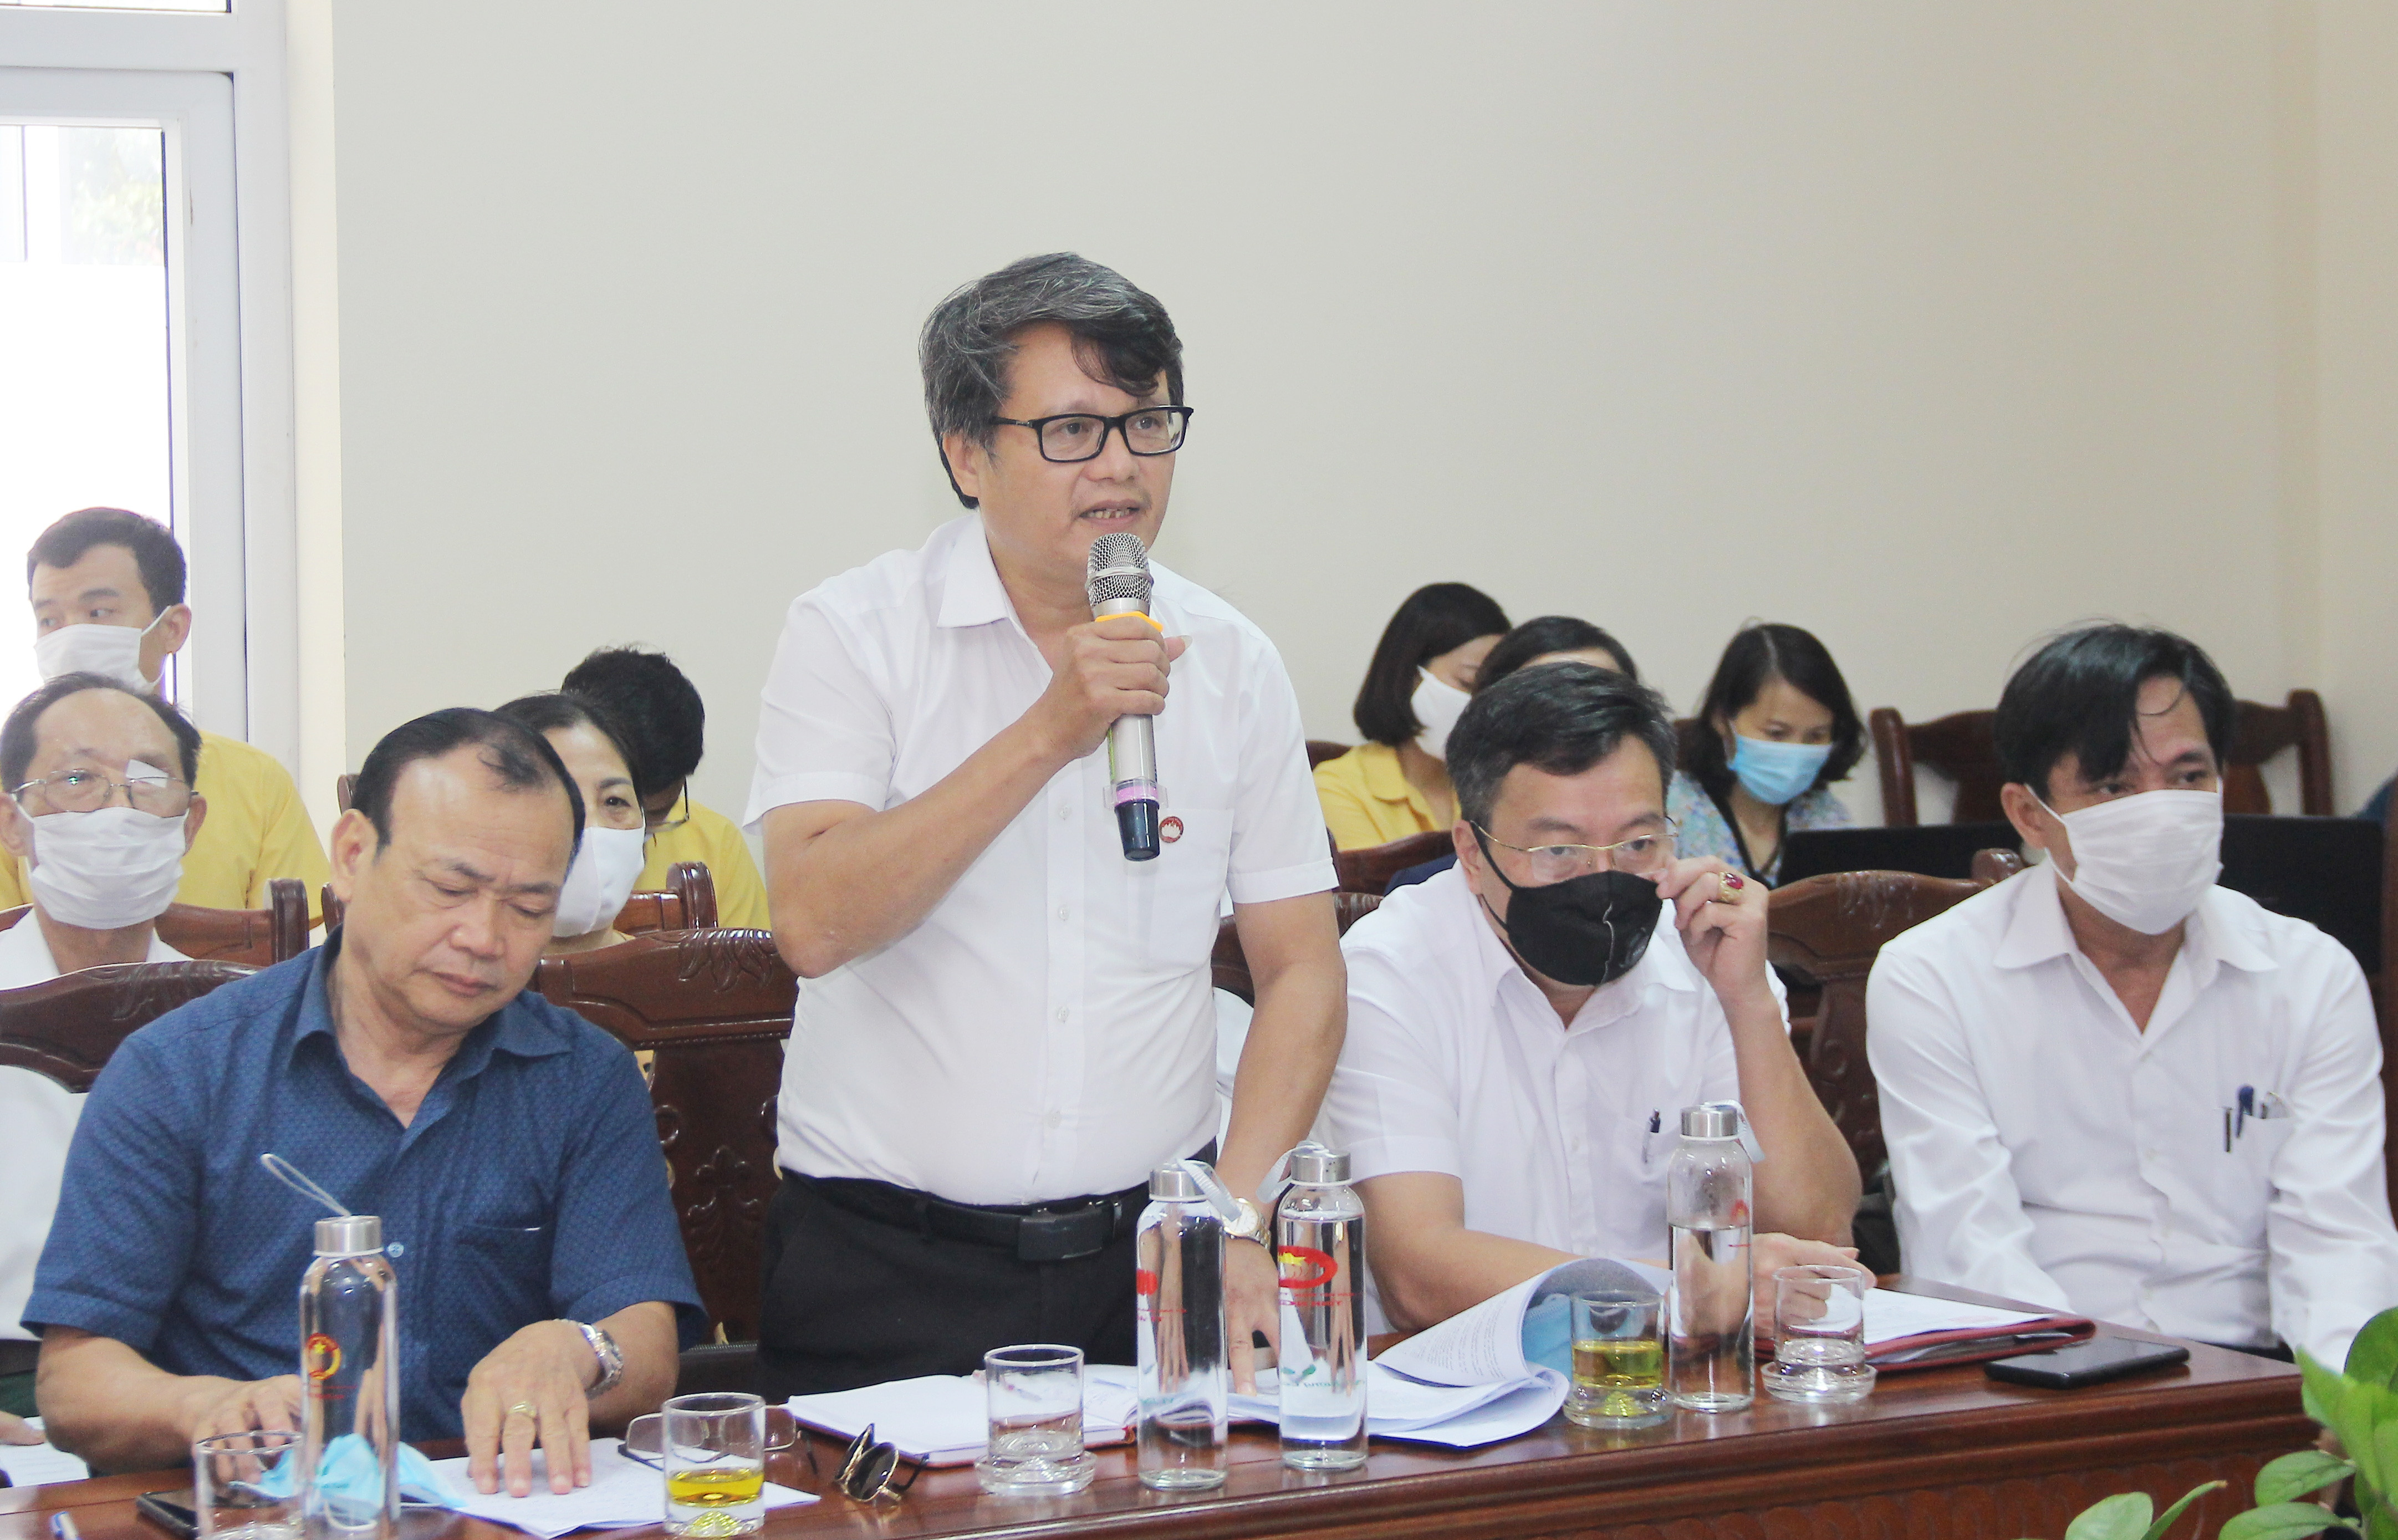 Ông Phan Duy Hùng - VCCI tại Nghệ An cho rằng cần có giải pháp đẩy mạnh cải cách hành chính, nhất là thủ tục hành chính và ý thức trách nhiệm trước công việc của đội ngũ cán bộ, công chức các cấp. Ảnh: Mai Hoa